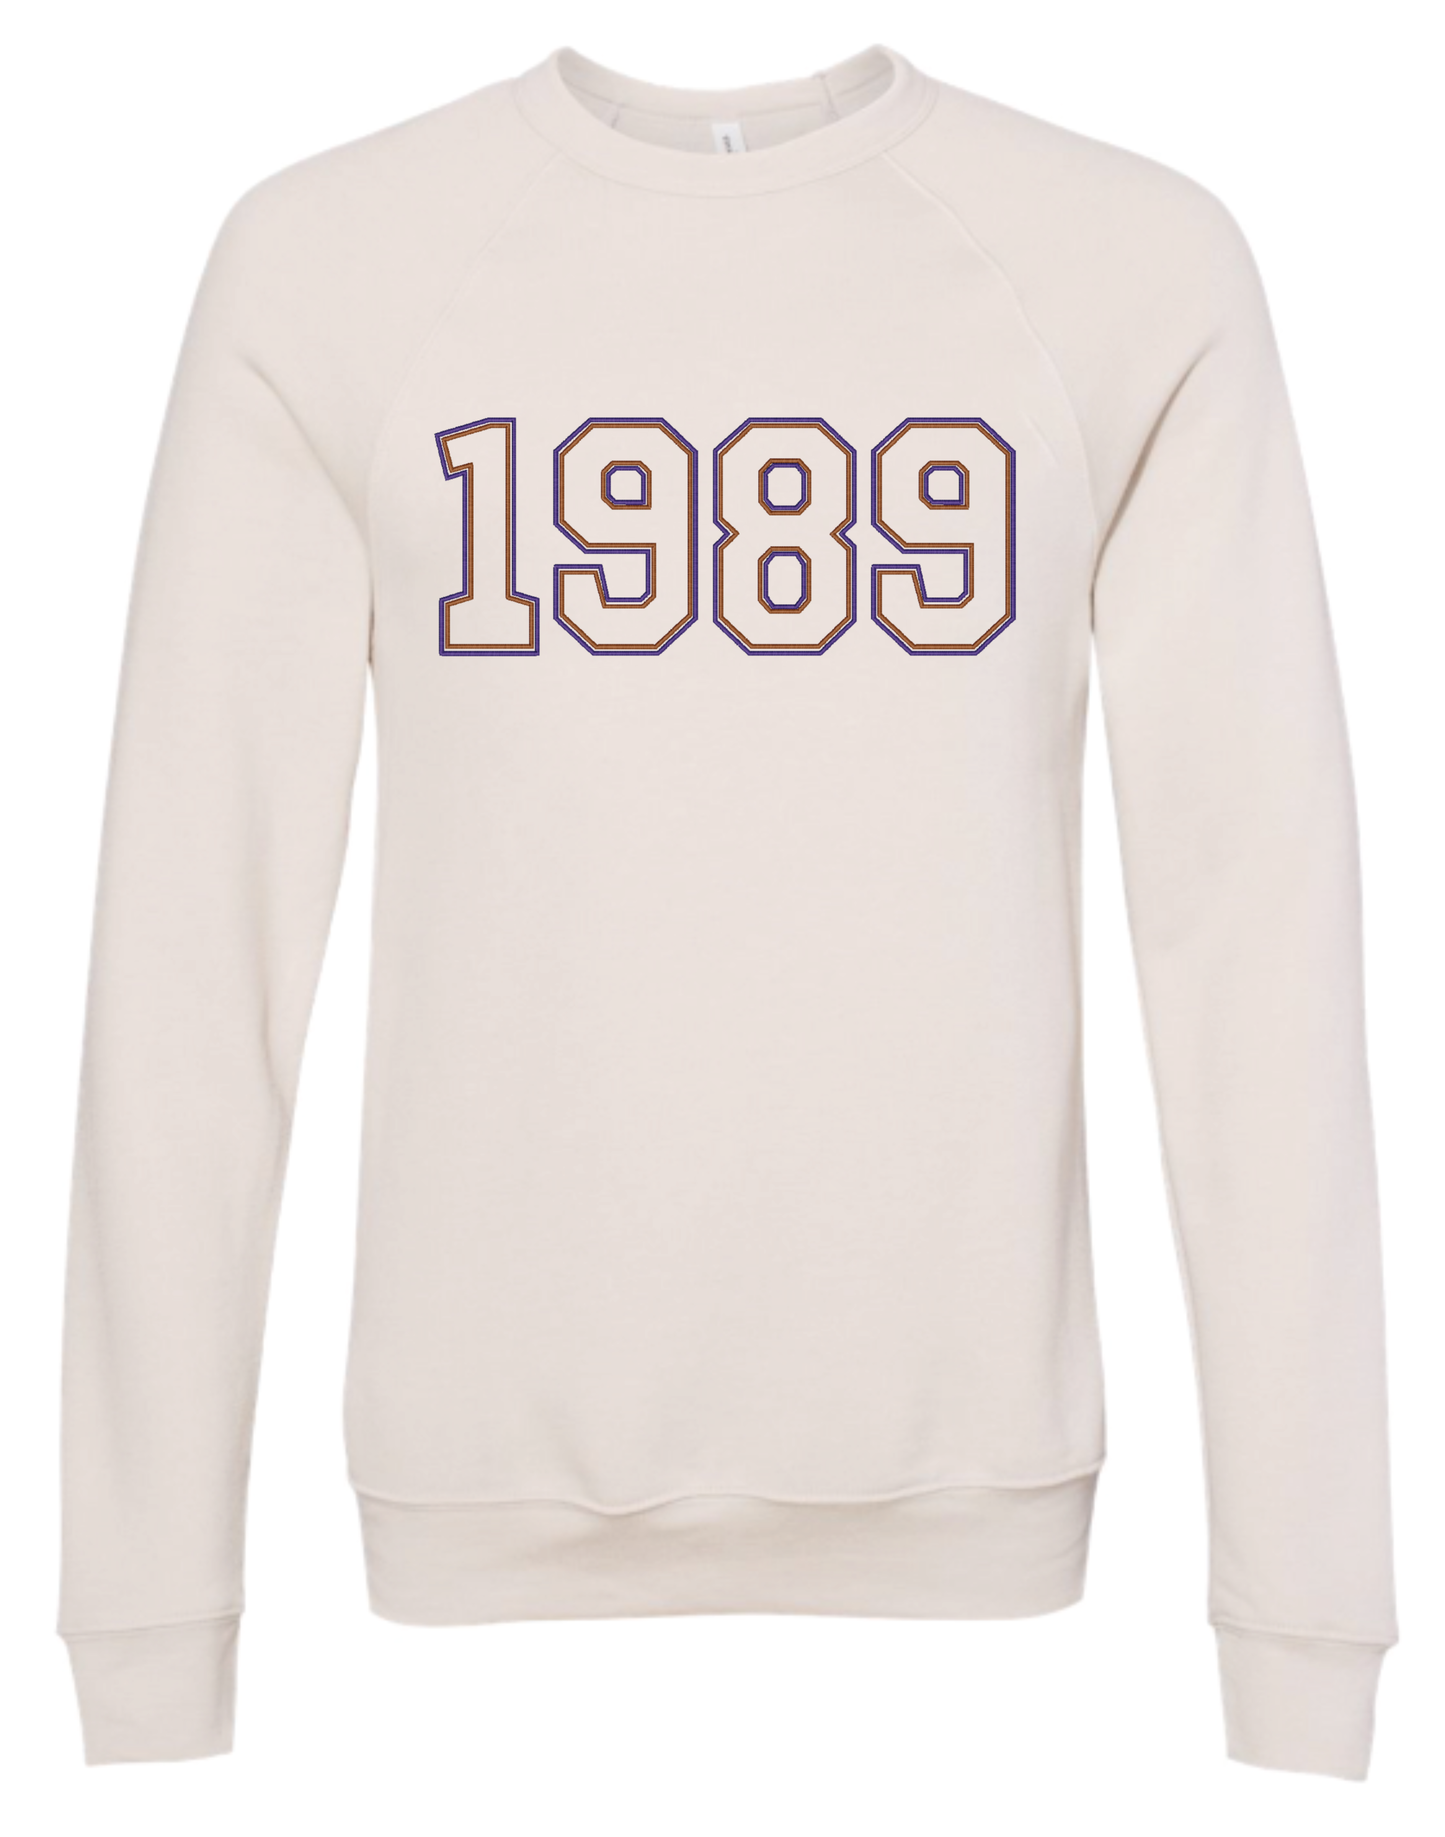 1989 Embroidered Sweatshirt